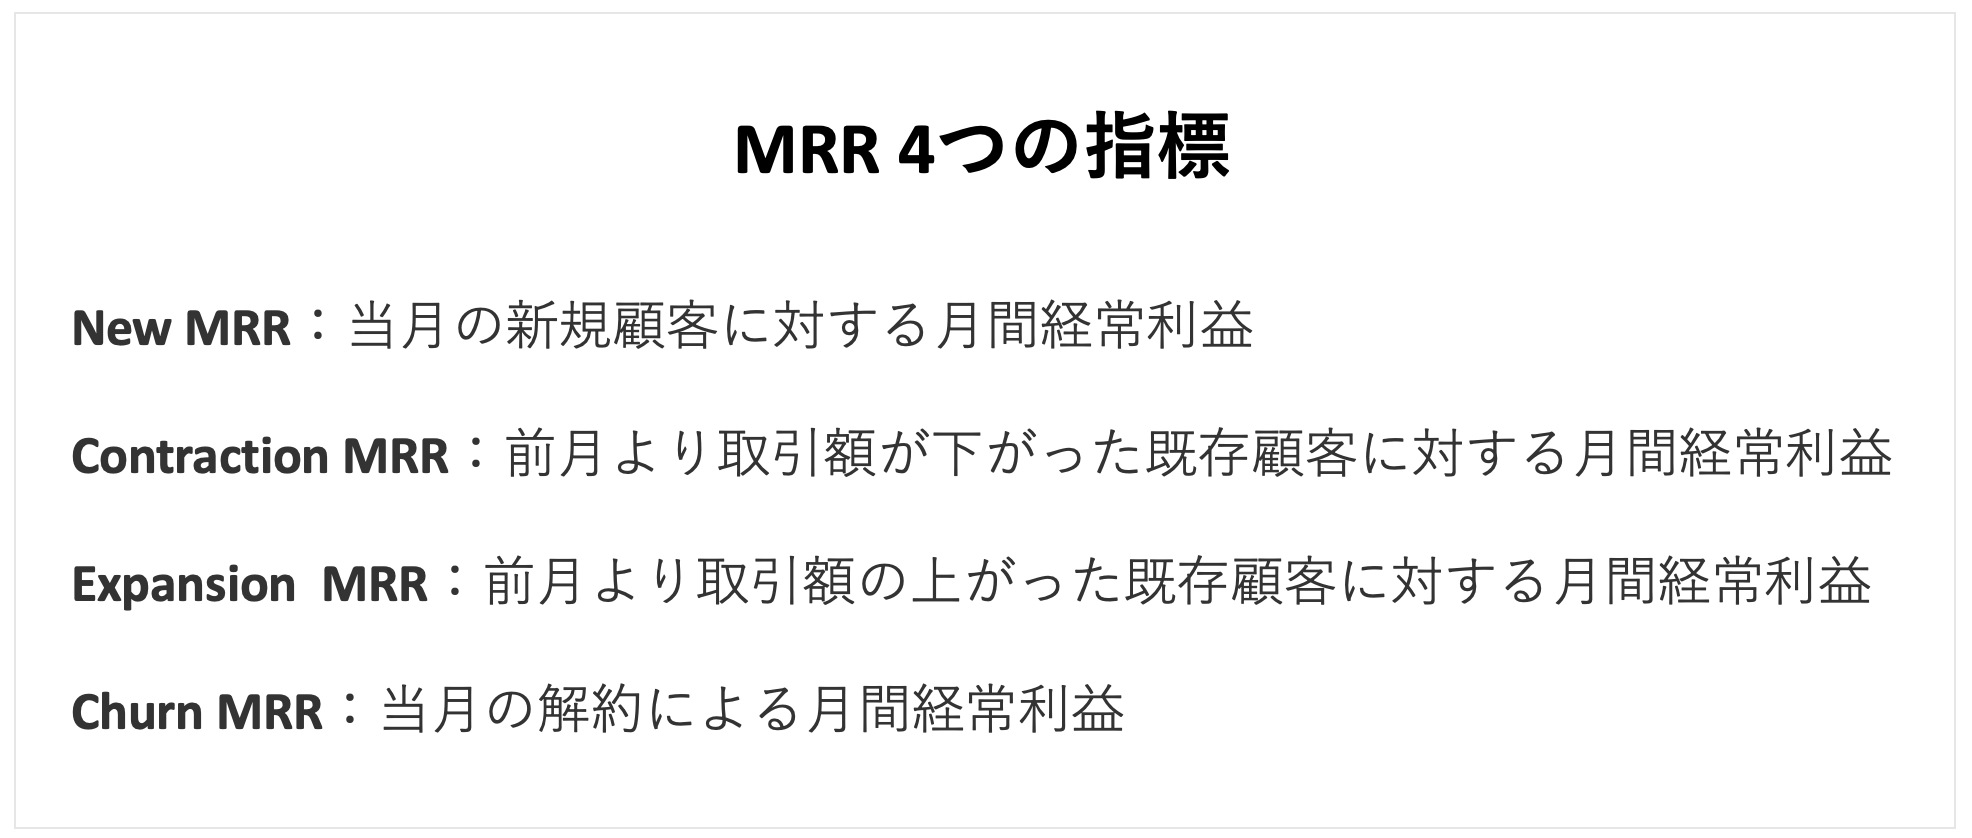 MRR4